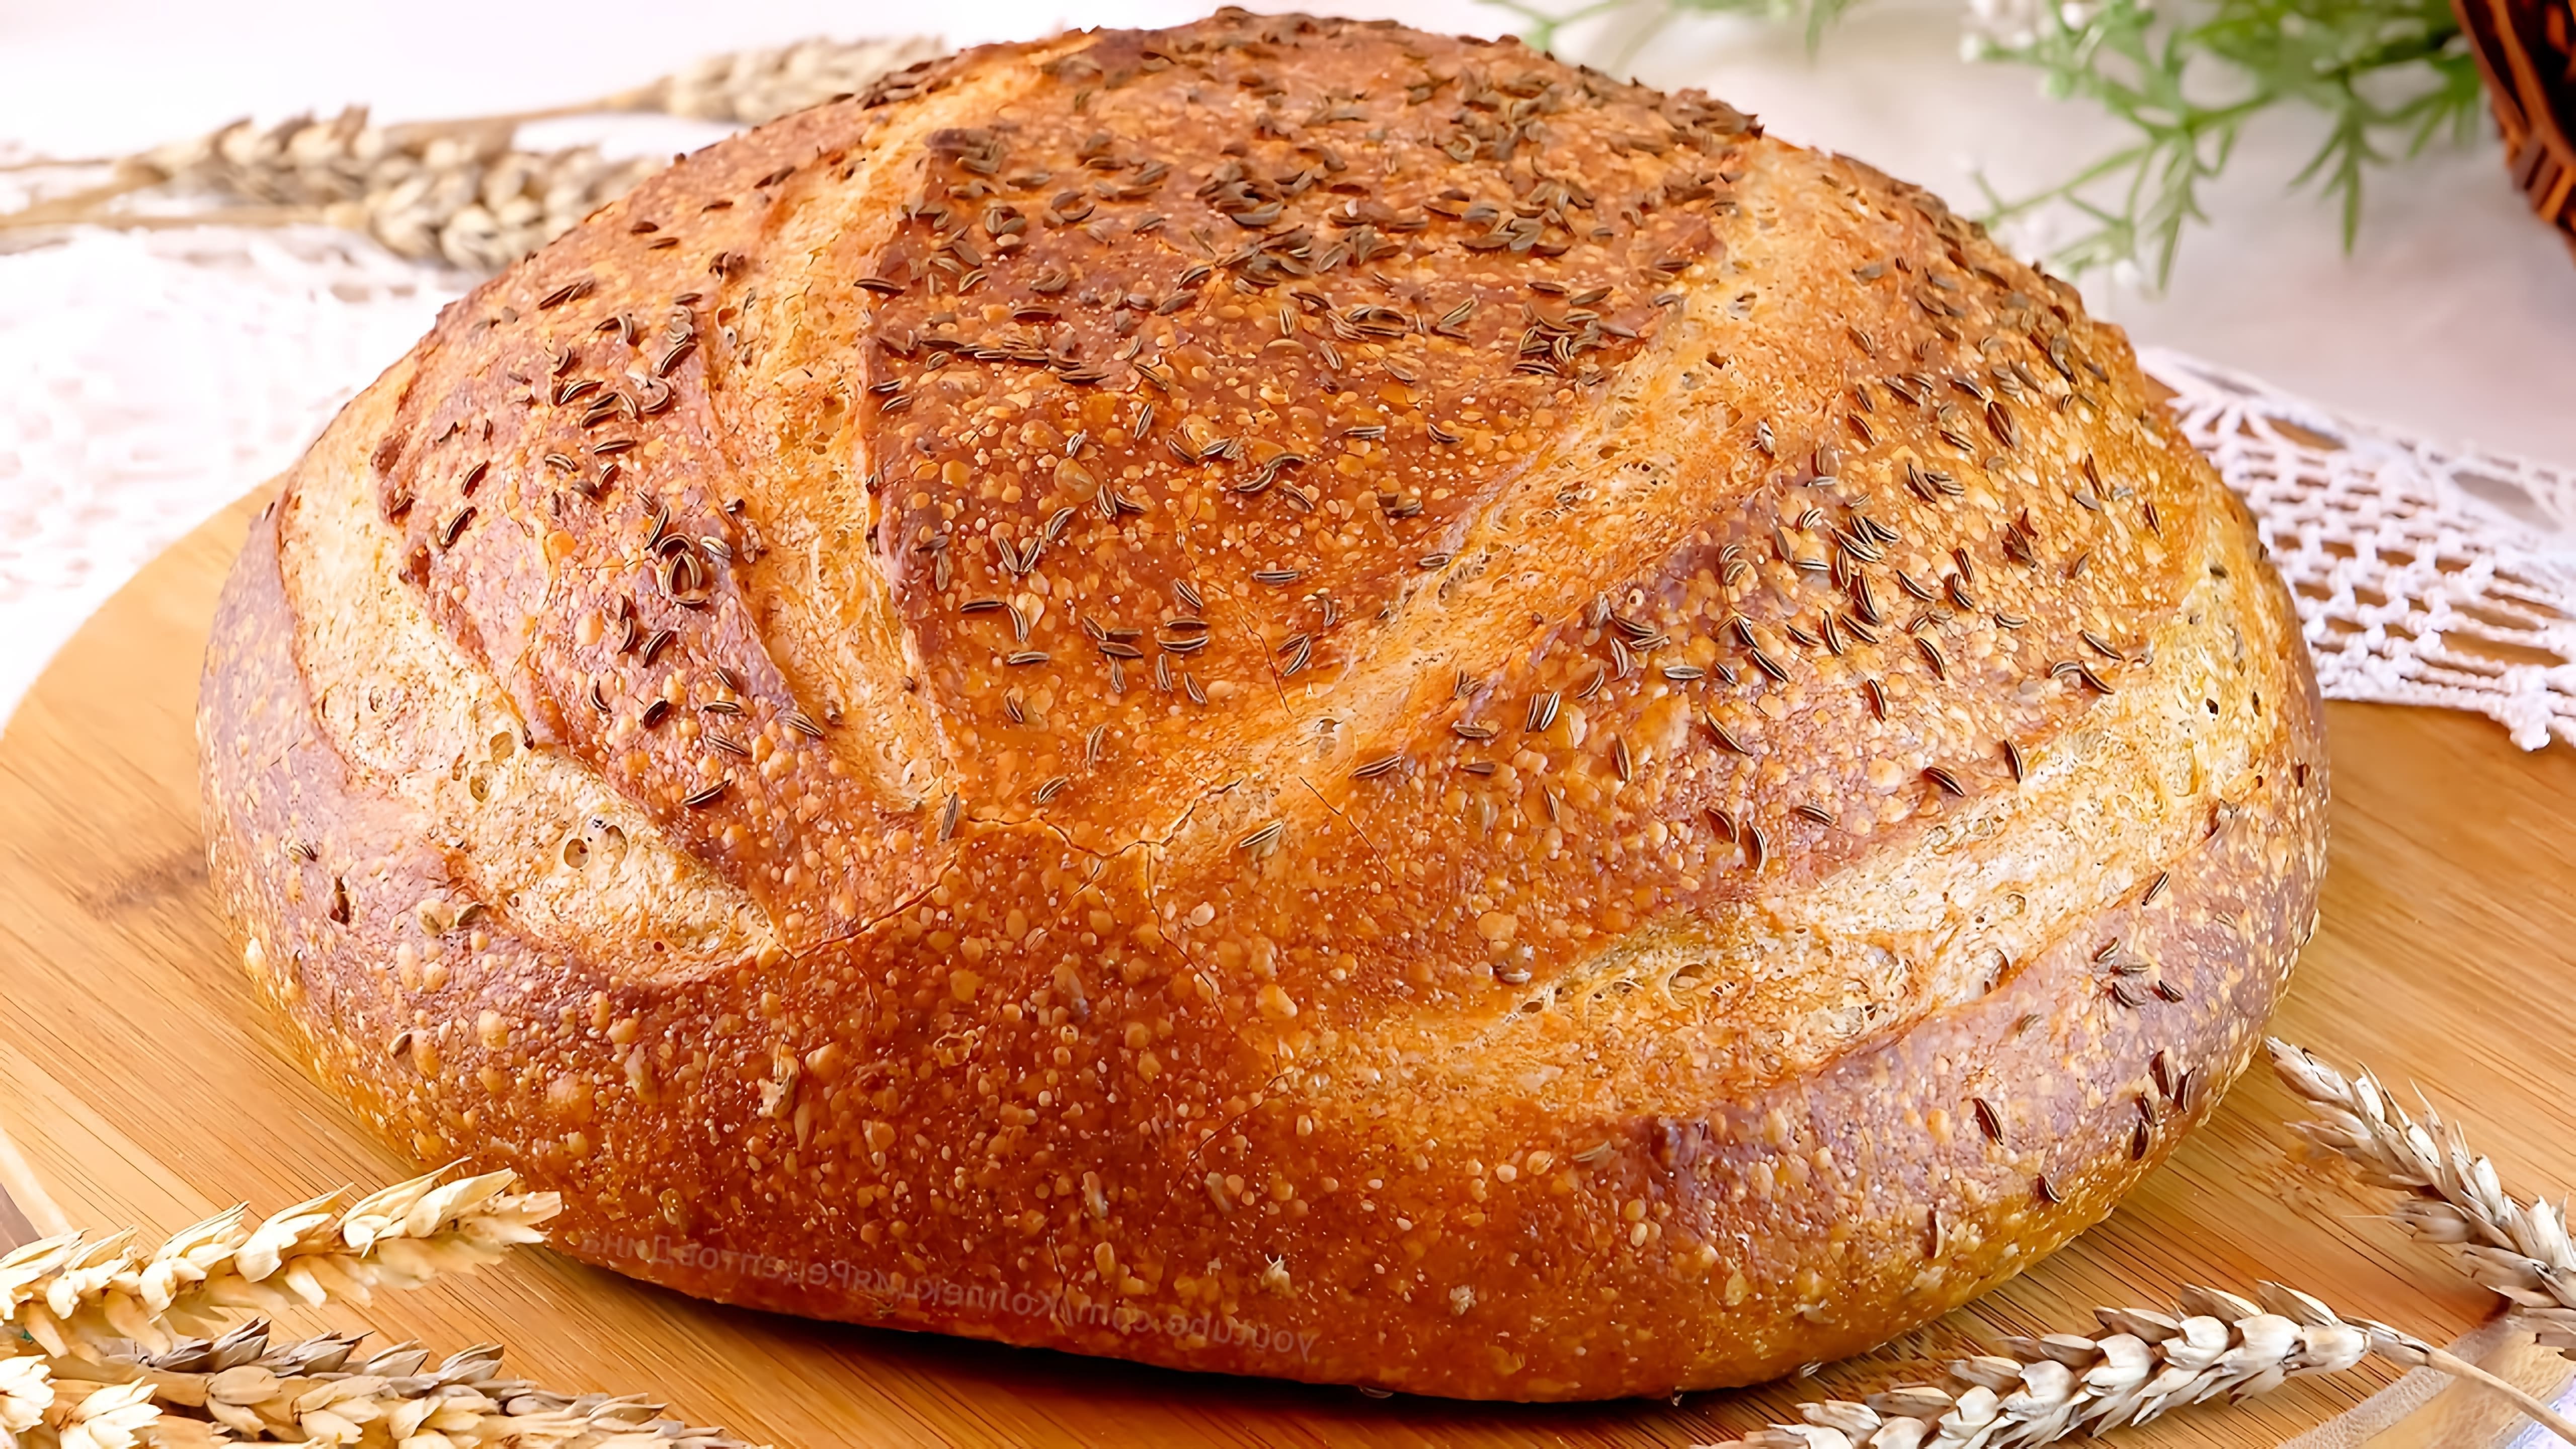 В этом видео демонстрируется процесс приготовления пшенично-ржаного хлеба с тмином на ржаной закваске